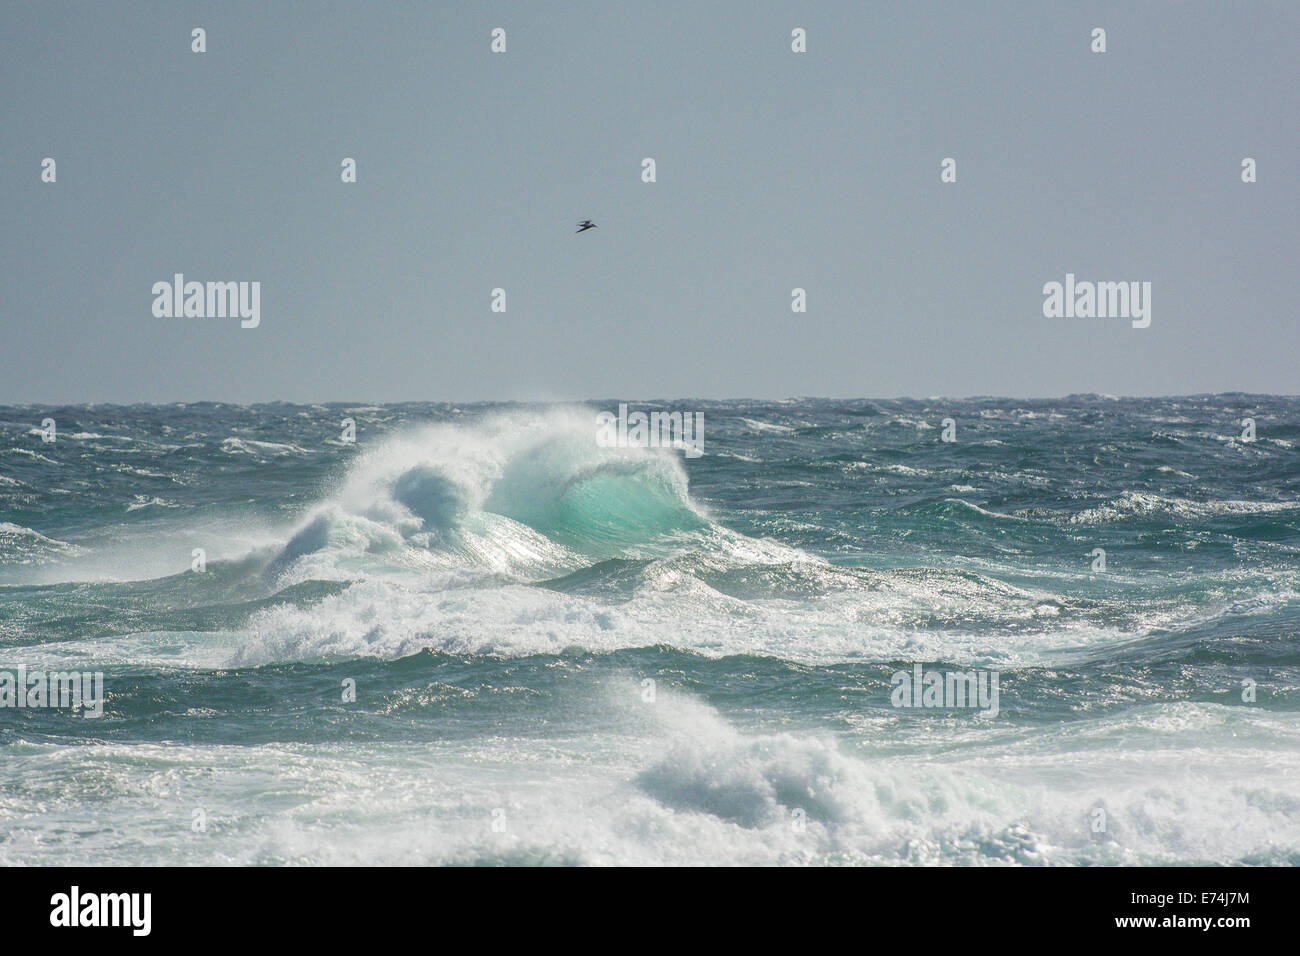 Stormy seas off Kingscliff, NSW, Australia Stock Photo